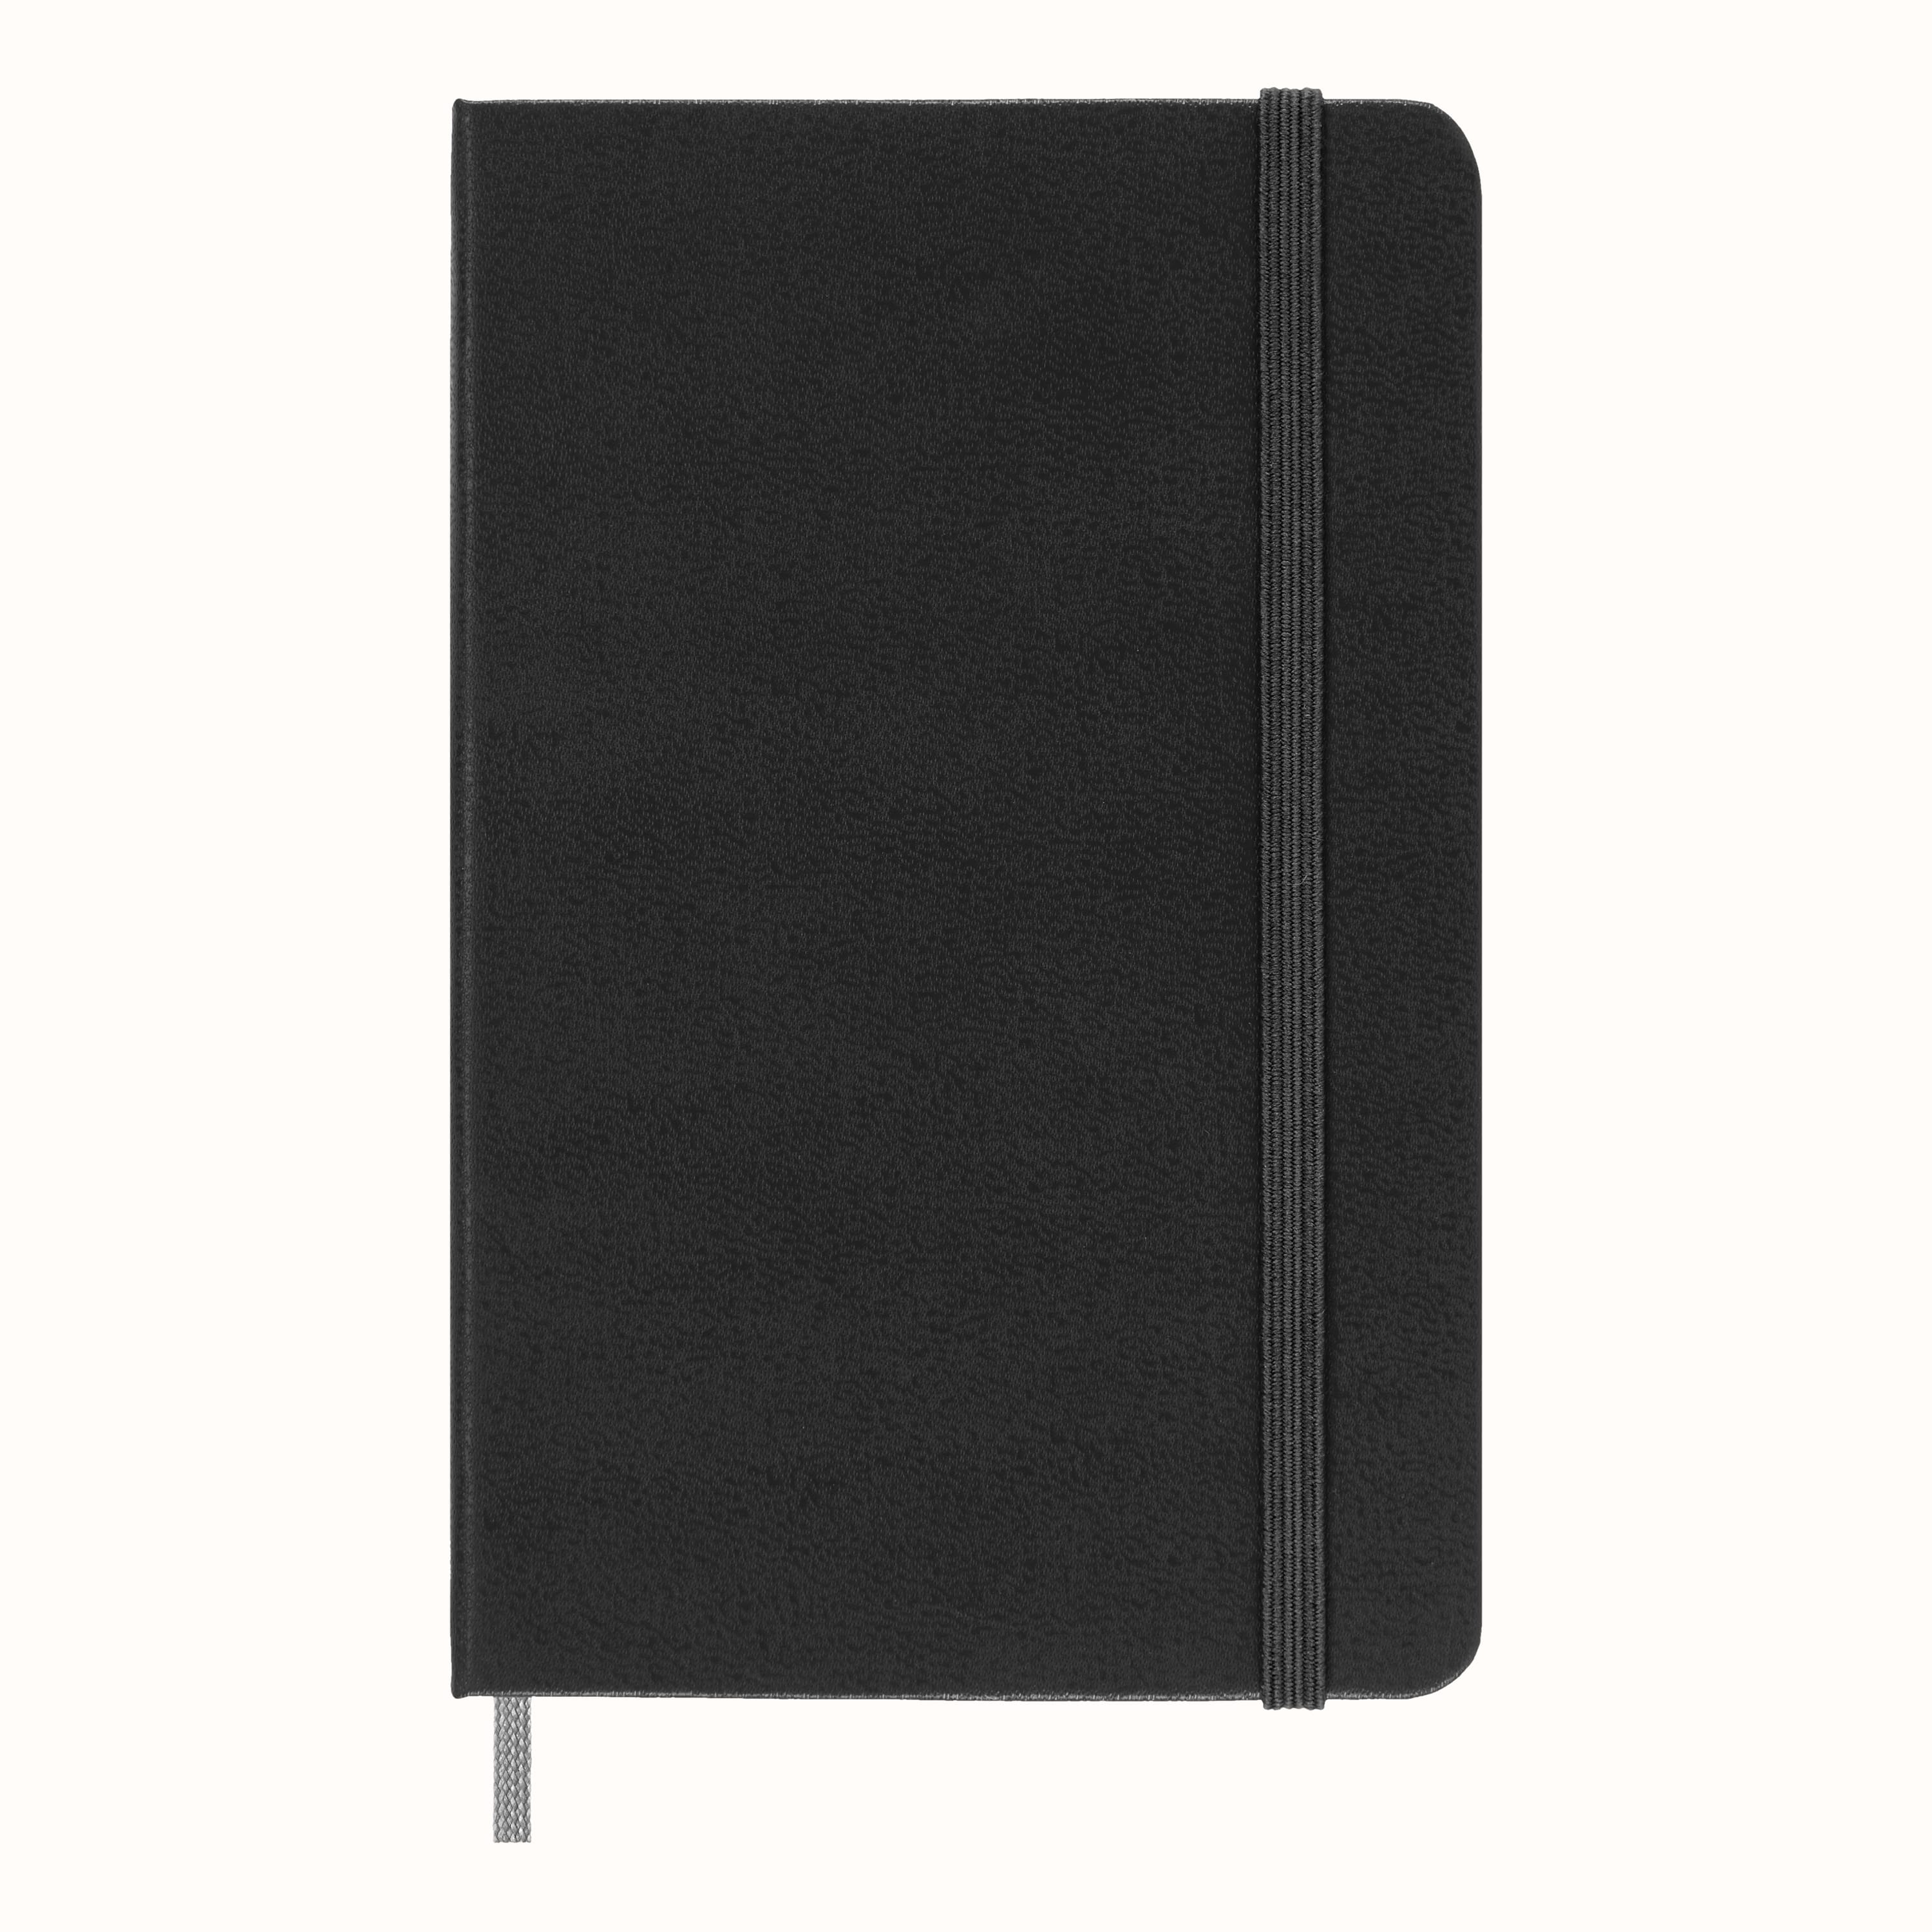 Amicucci - moleskine - dotted notebook - taccuino puntinato - 19x25cm - 192  pagg. - copertina rigida